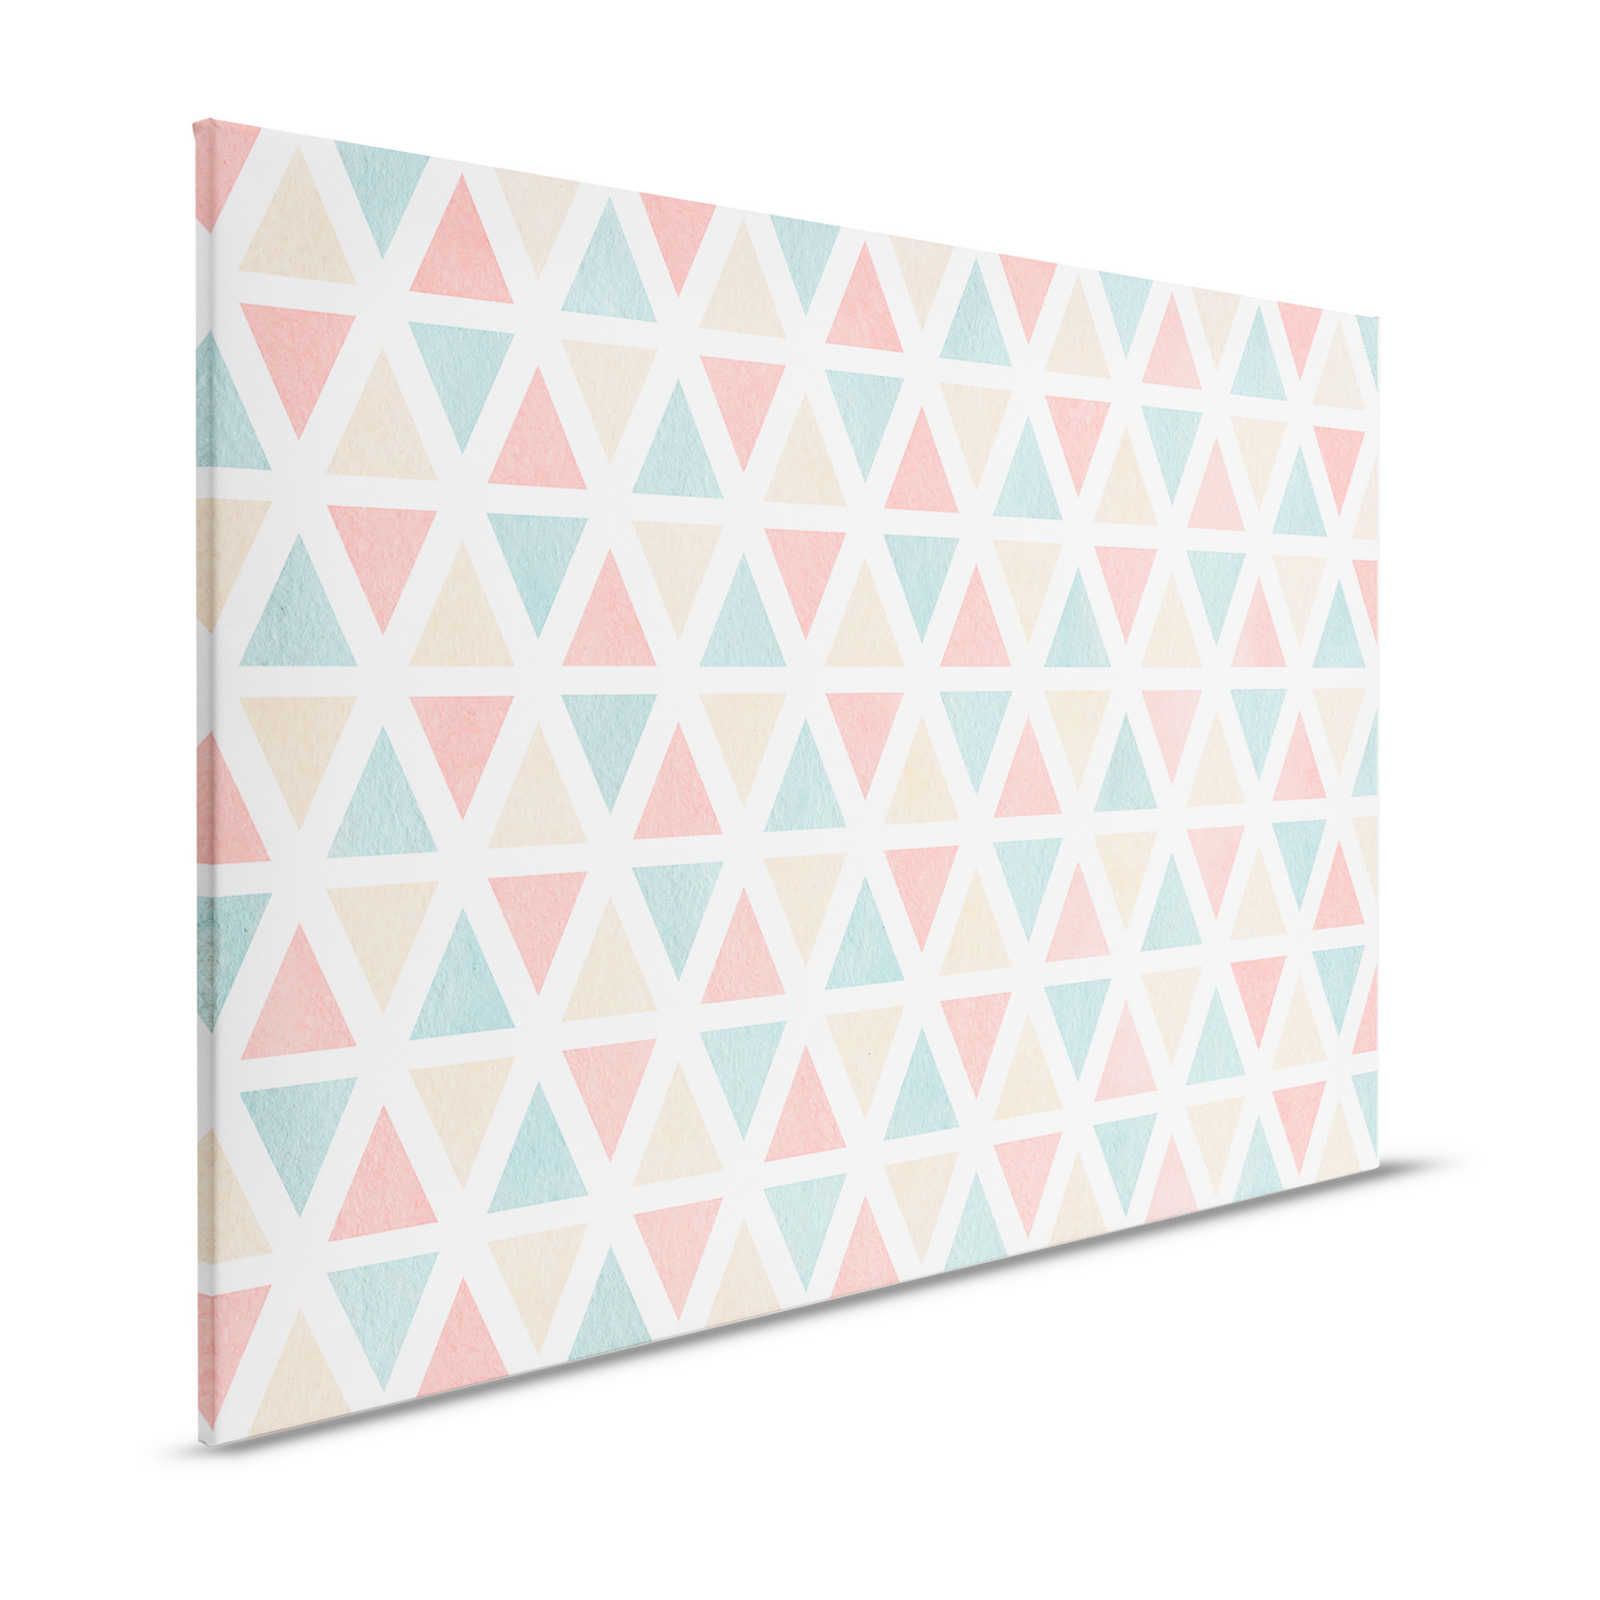 Lienzo con motivo gráfico de triángulos de colores - 120 cm x 80 cm
